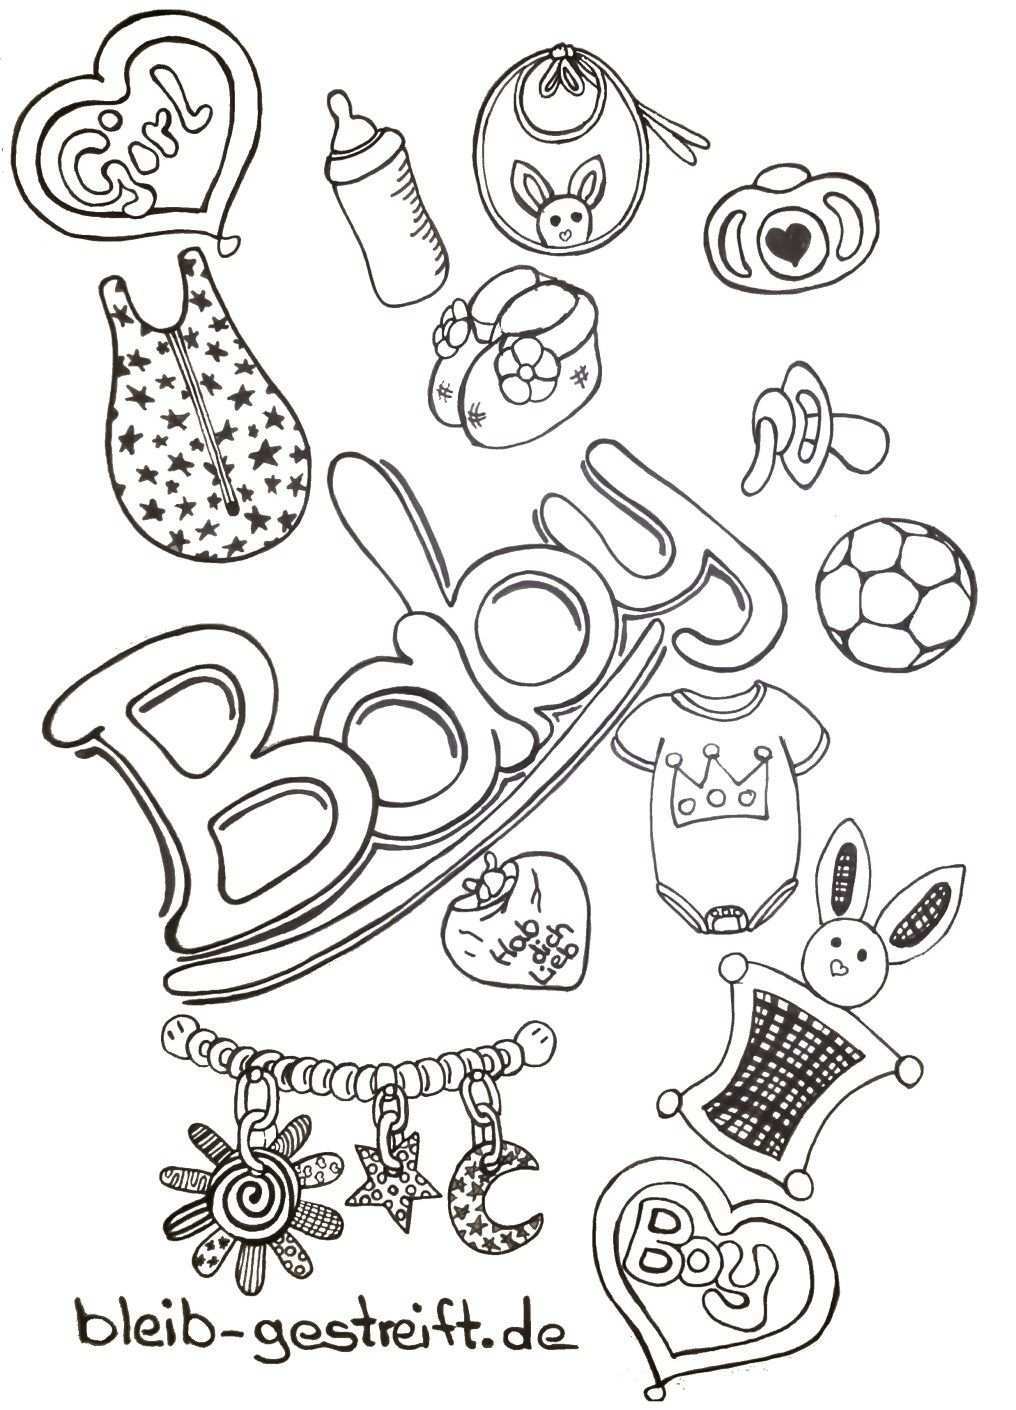 Doodles Zeichnen Viele Vorlagen Fur Deine Inspiration Und Kreativitat Baby Boy Scrapbook Foto Doodle Gekritzel